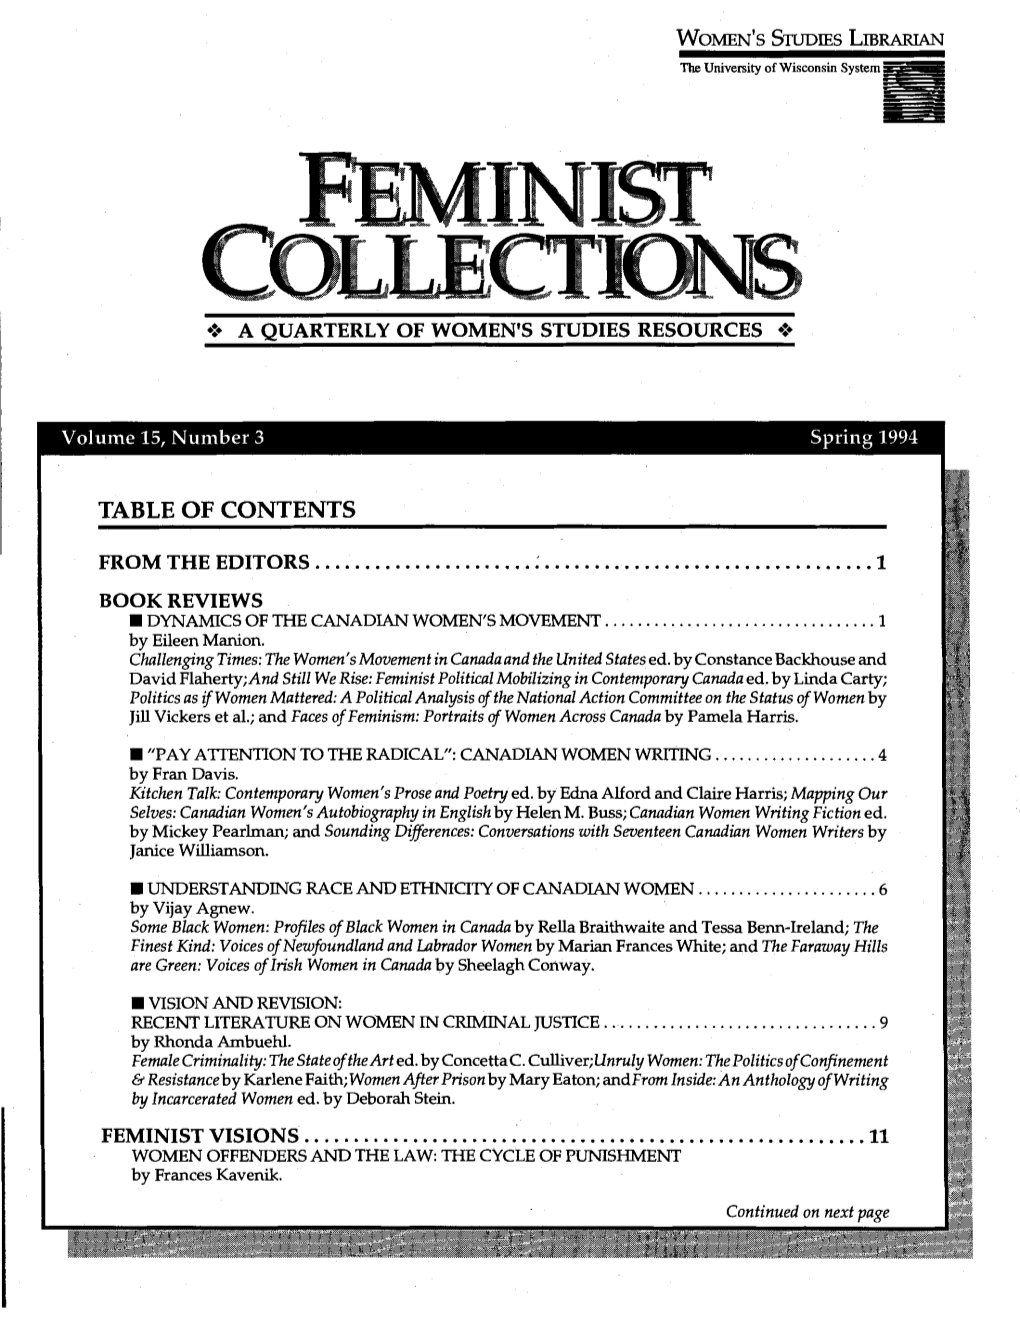 Feministvisions ...11